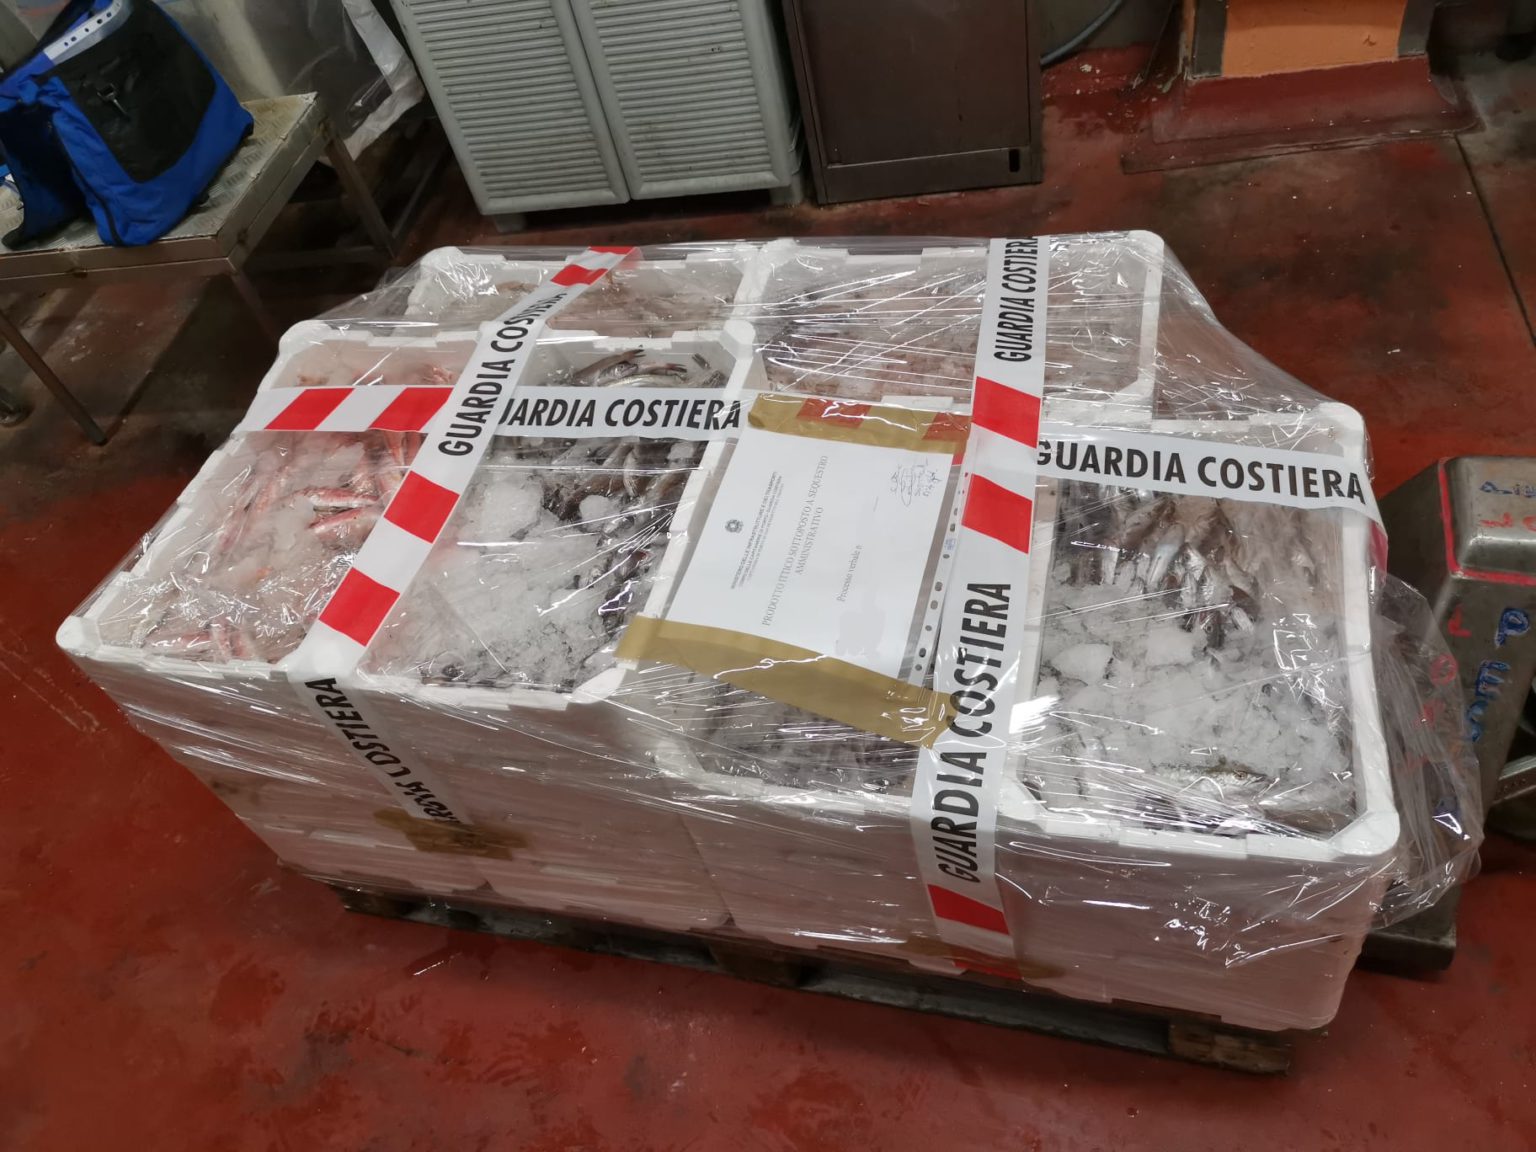 Prodotti privi di documentazione: sequestrati 45 chili di pesce a un ristorante di San Benedetto. Multa per 500 euro